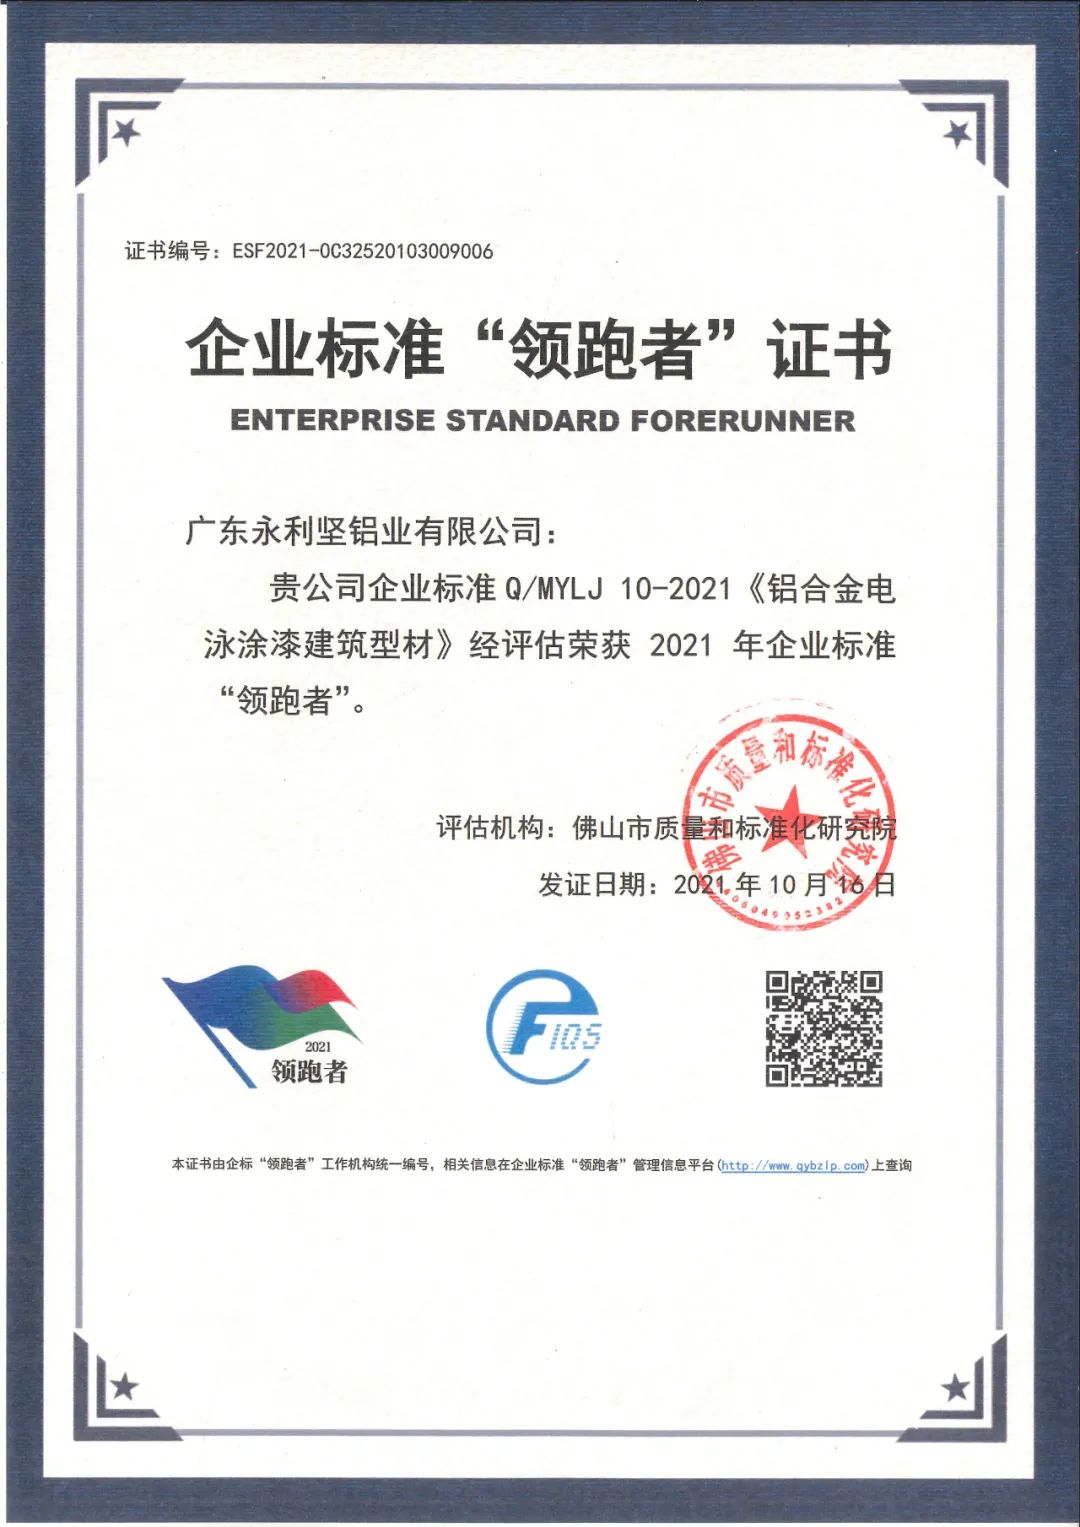 广东永利坚企业标准被评为全国企业标准“**者”。